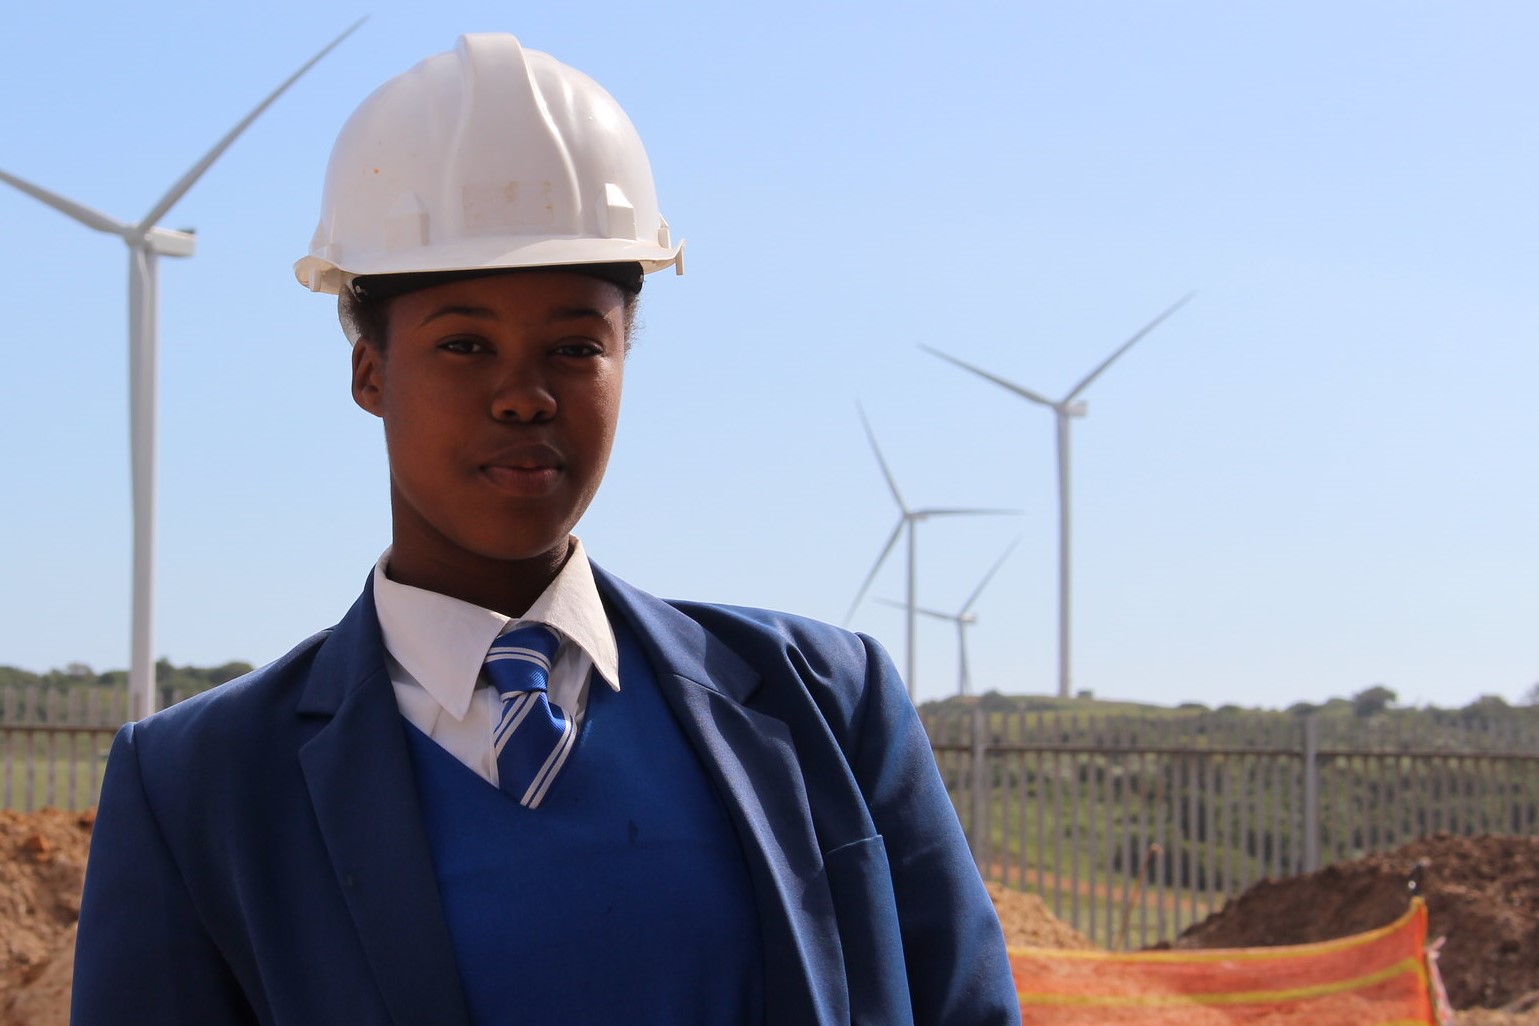 Novos empregos, velhos padrões. Na imagem: Mulher trabalha em parque eólico na África do Sul (Foto: Global Wind Energy Council)